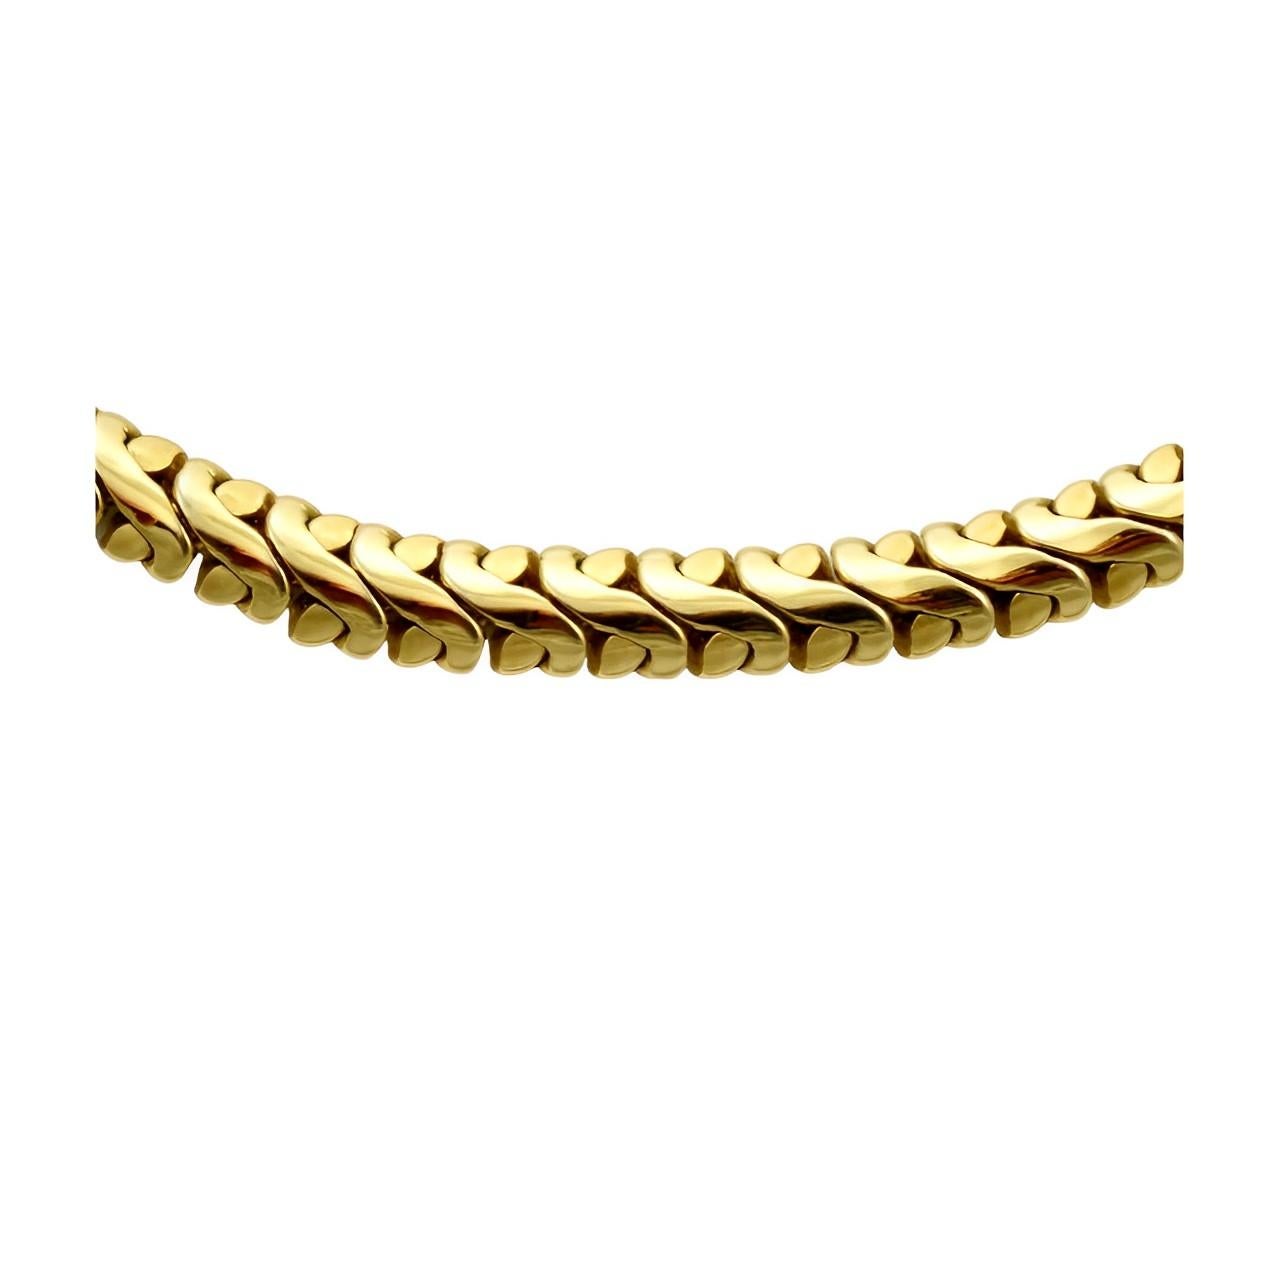 Élégante chaîne lourde plaquée or avec un superbe design de maillons fantaisie. Longueur 41,8 cm / 16,45 pouces et largeur 7 mm / .27 pouces.

Il s'agit d'un collier à chaîne de qualité, datant des années 1980.